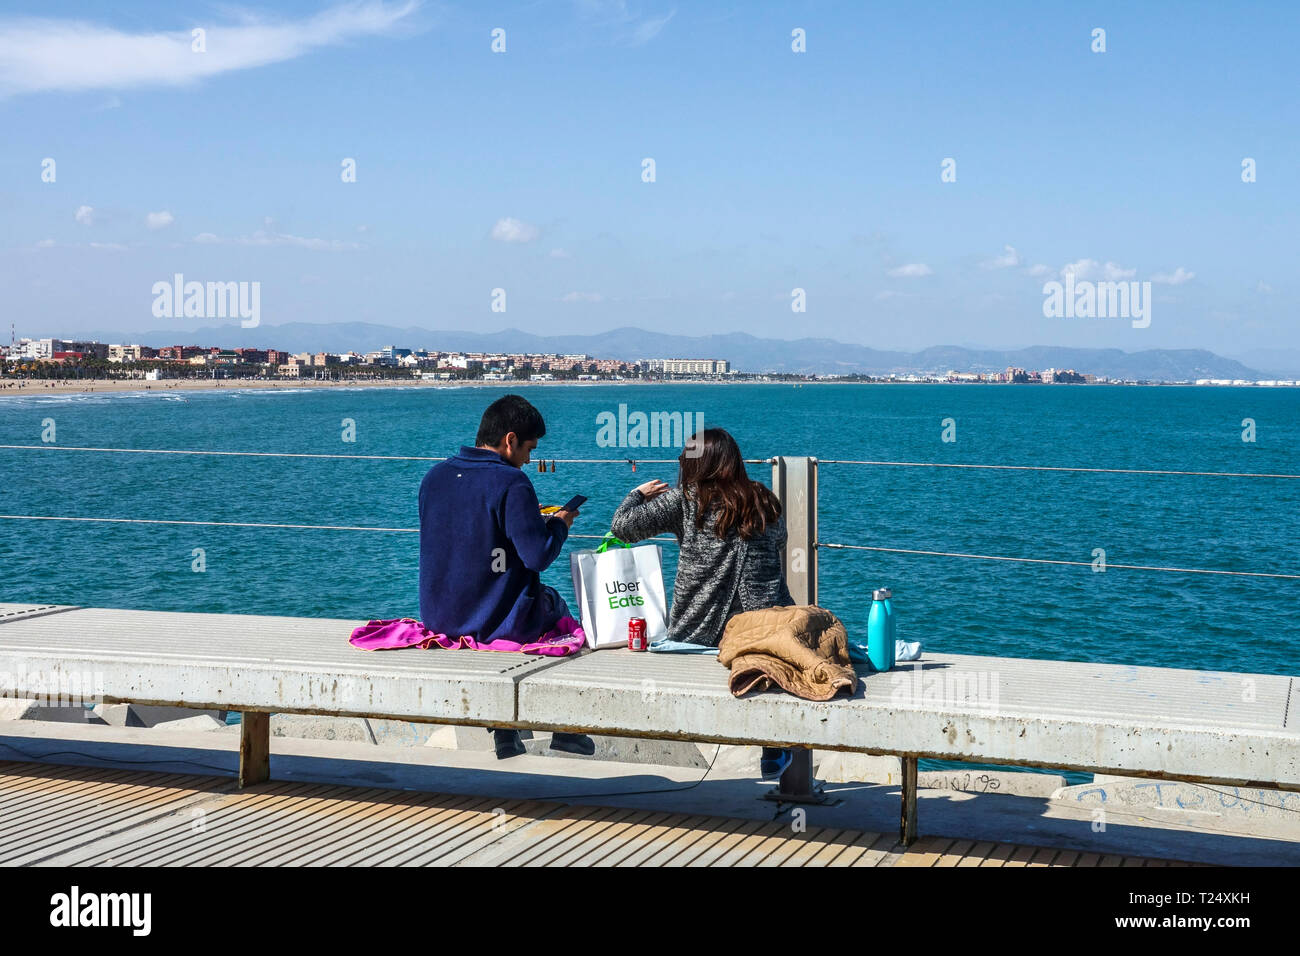 Das Paar machte ein Picknick auf dem Betonpier mit Blick auf das Meer und Malvarrosa Strand das Essen wurde von Uber Eats, Valencia Hafen, Spanien Meerblick geliefert Stockfoto